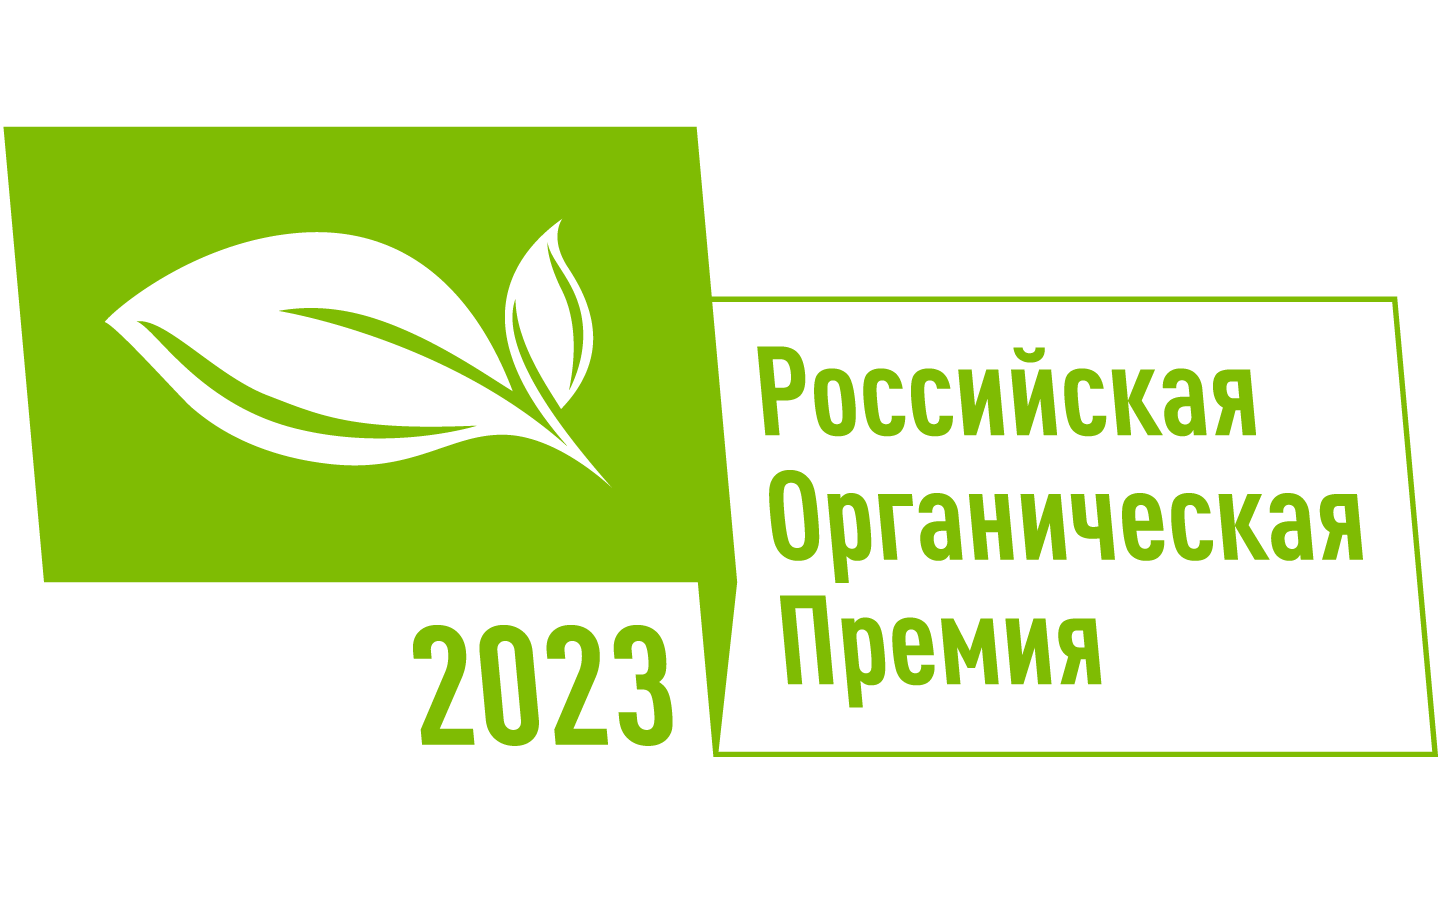 Награждение победителей Всероссийского конкурса на соискание премии за достижения в развитии органической продукции пройдет на X Невском международном экологическом конгрессе